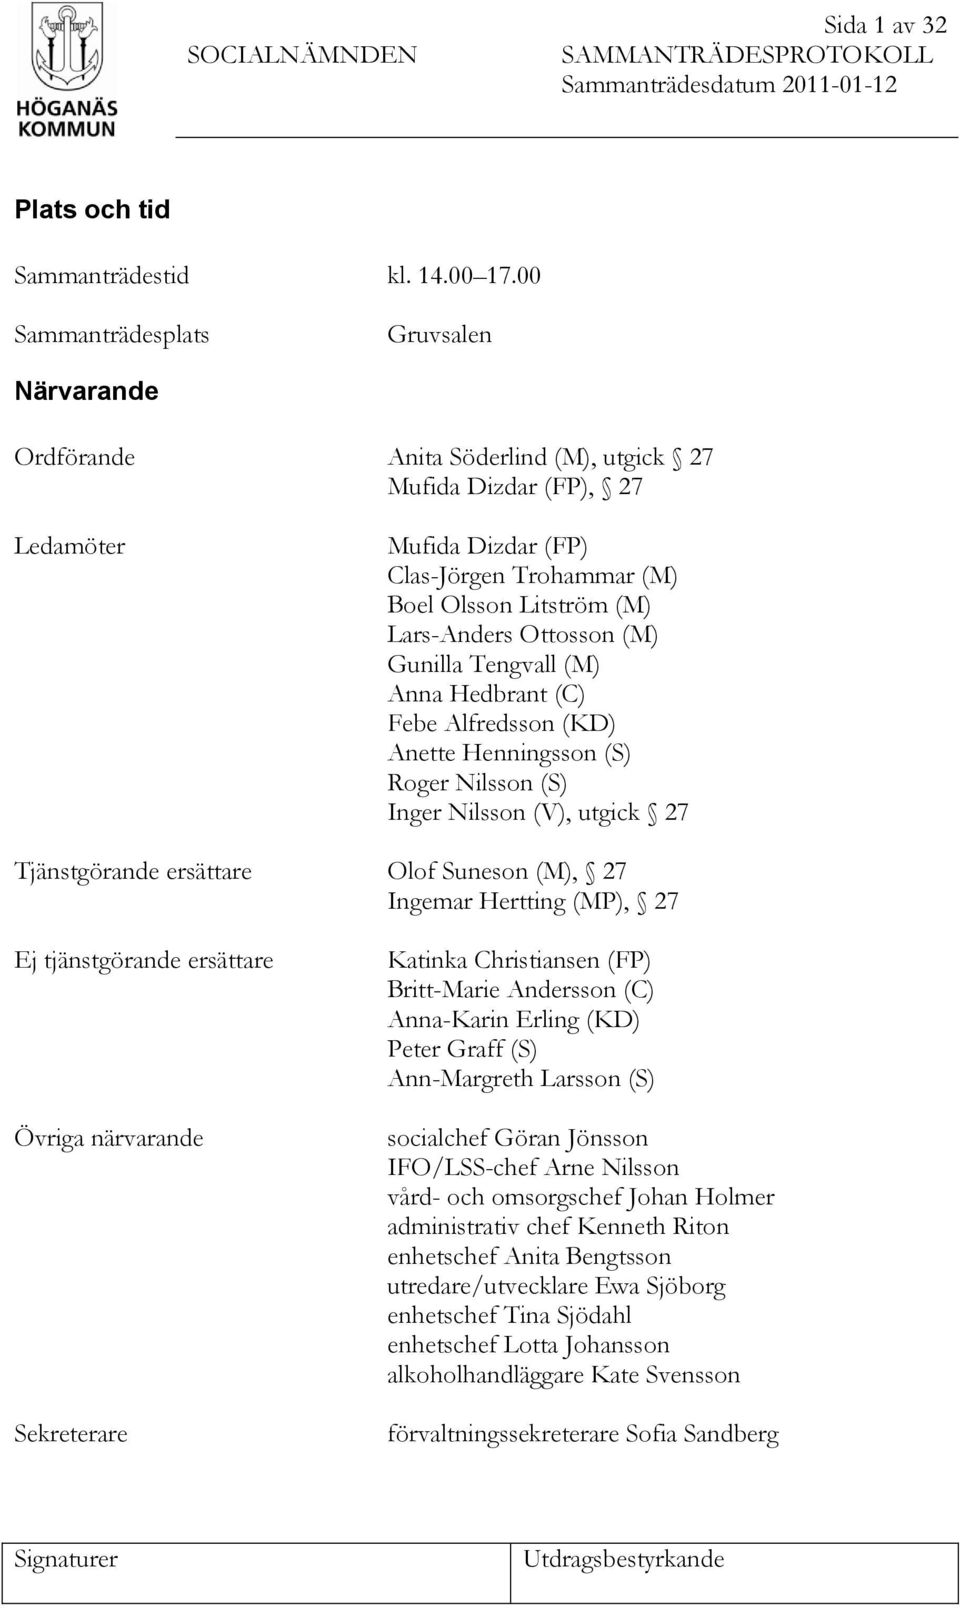 Ottosson (M) Gunilla Tengvall (M) Anna Hedbrant (C) Febe Alfredsson (KD) Anette Henningsson (S) Roger Nilsson (S) Inger Nilsson (V), utgick 27 Tjänstgörande ersättare Olof Suneson (M), 27 Ingemar